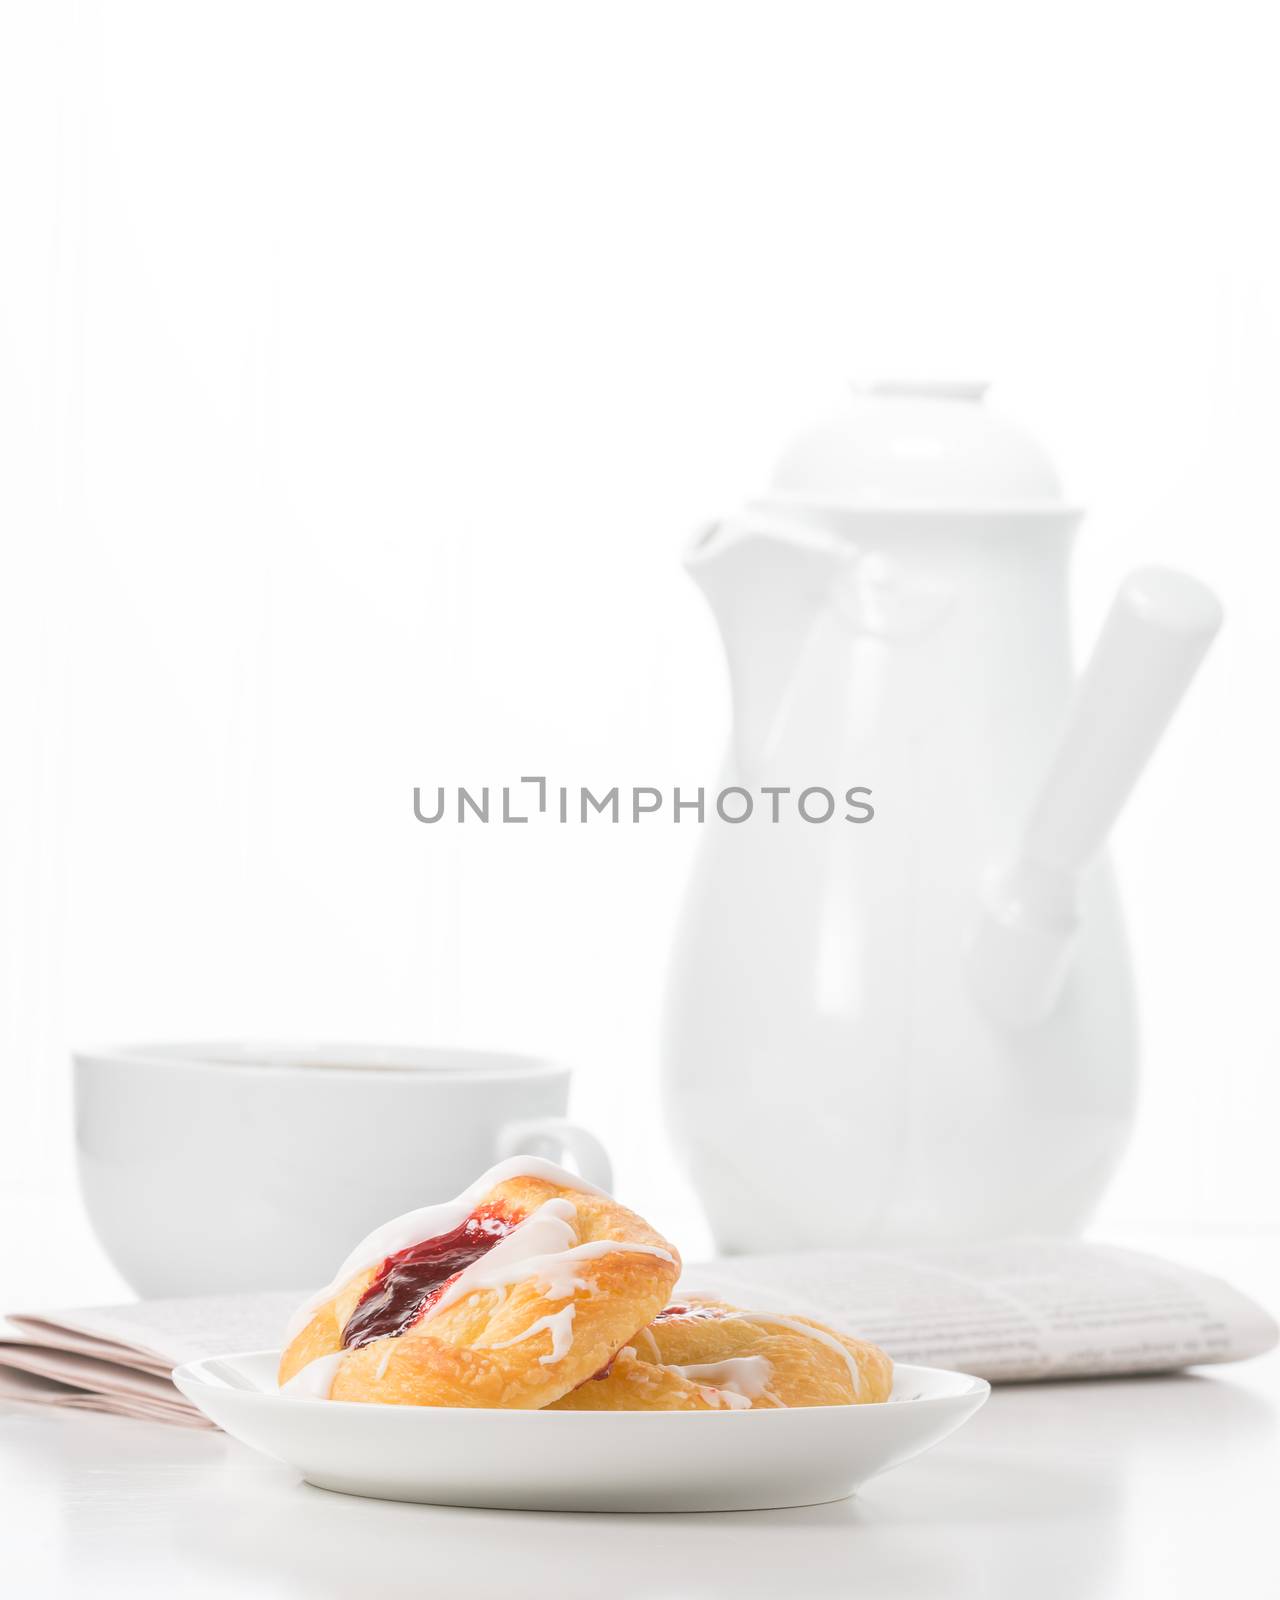 Good Morning Breakfast Portrait by billberryphotography